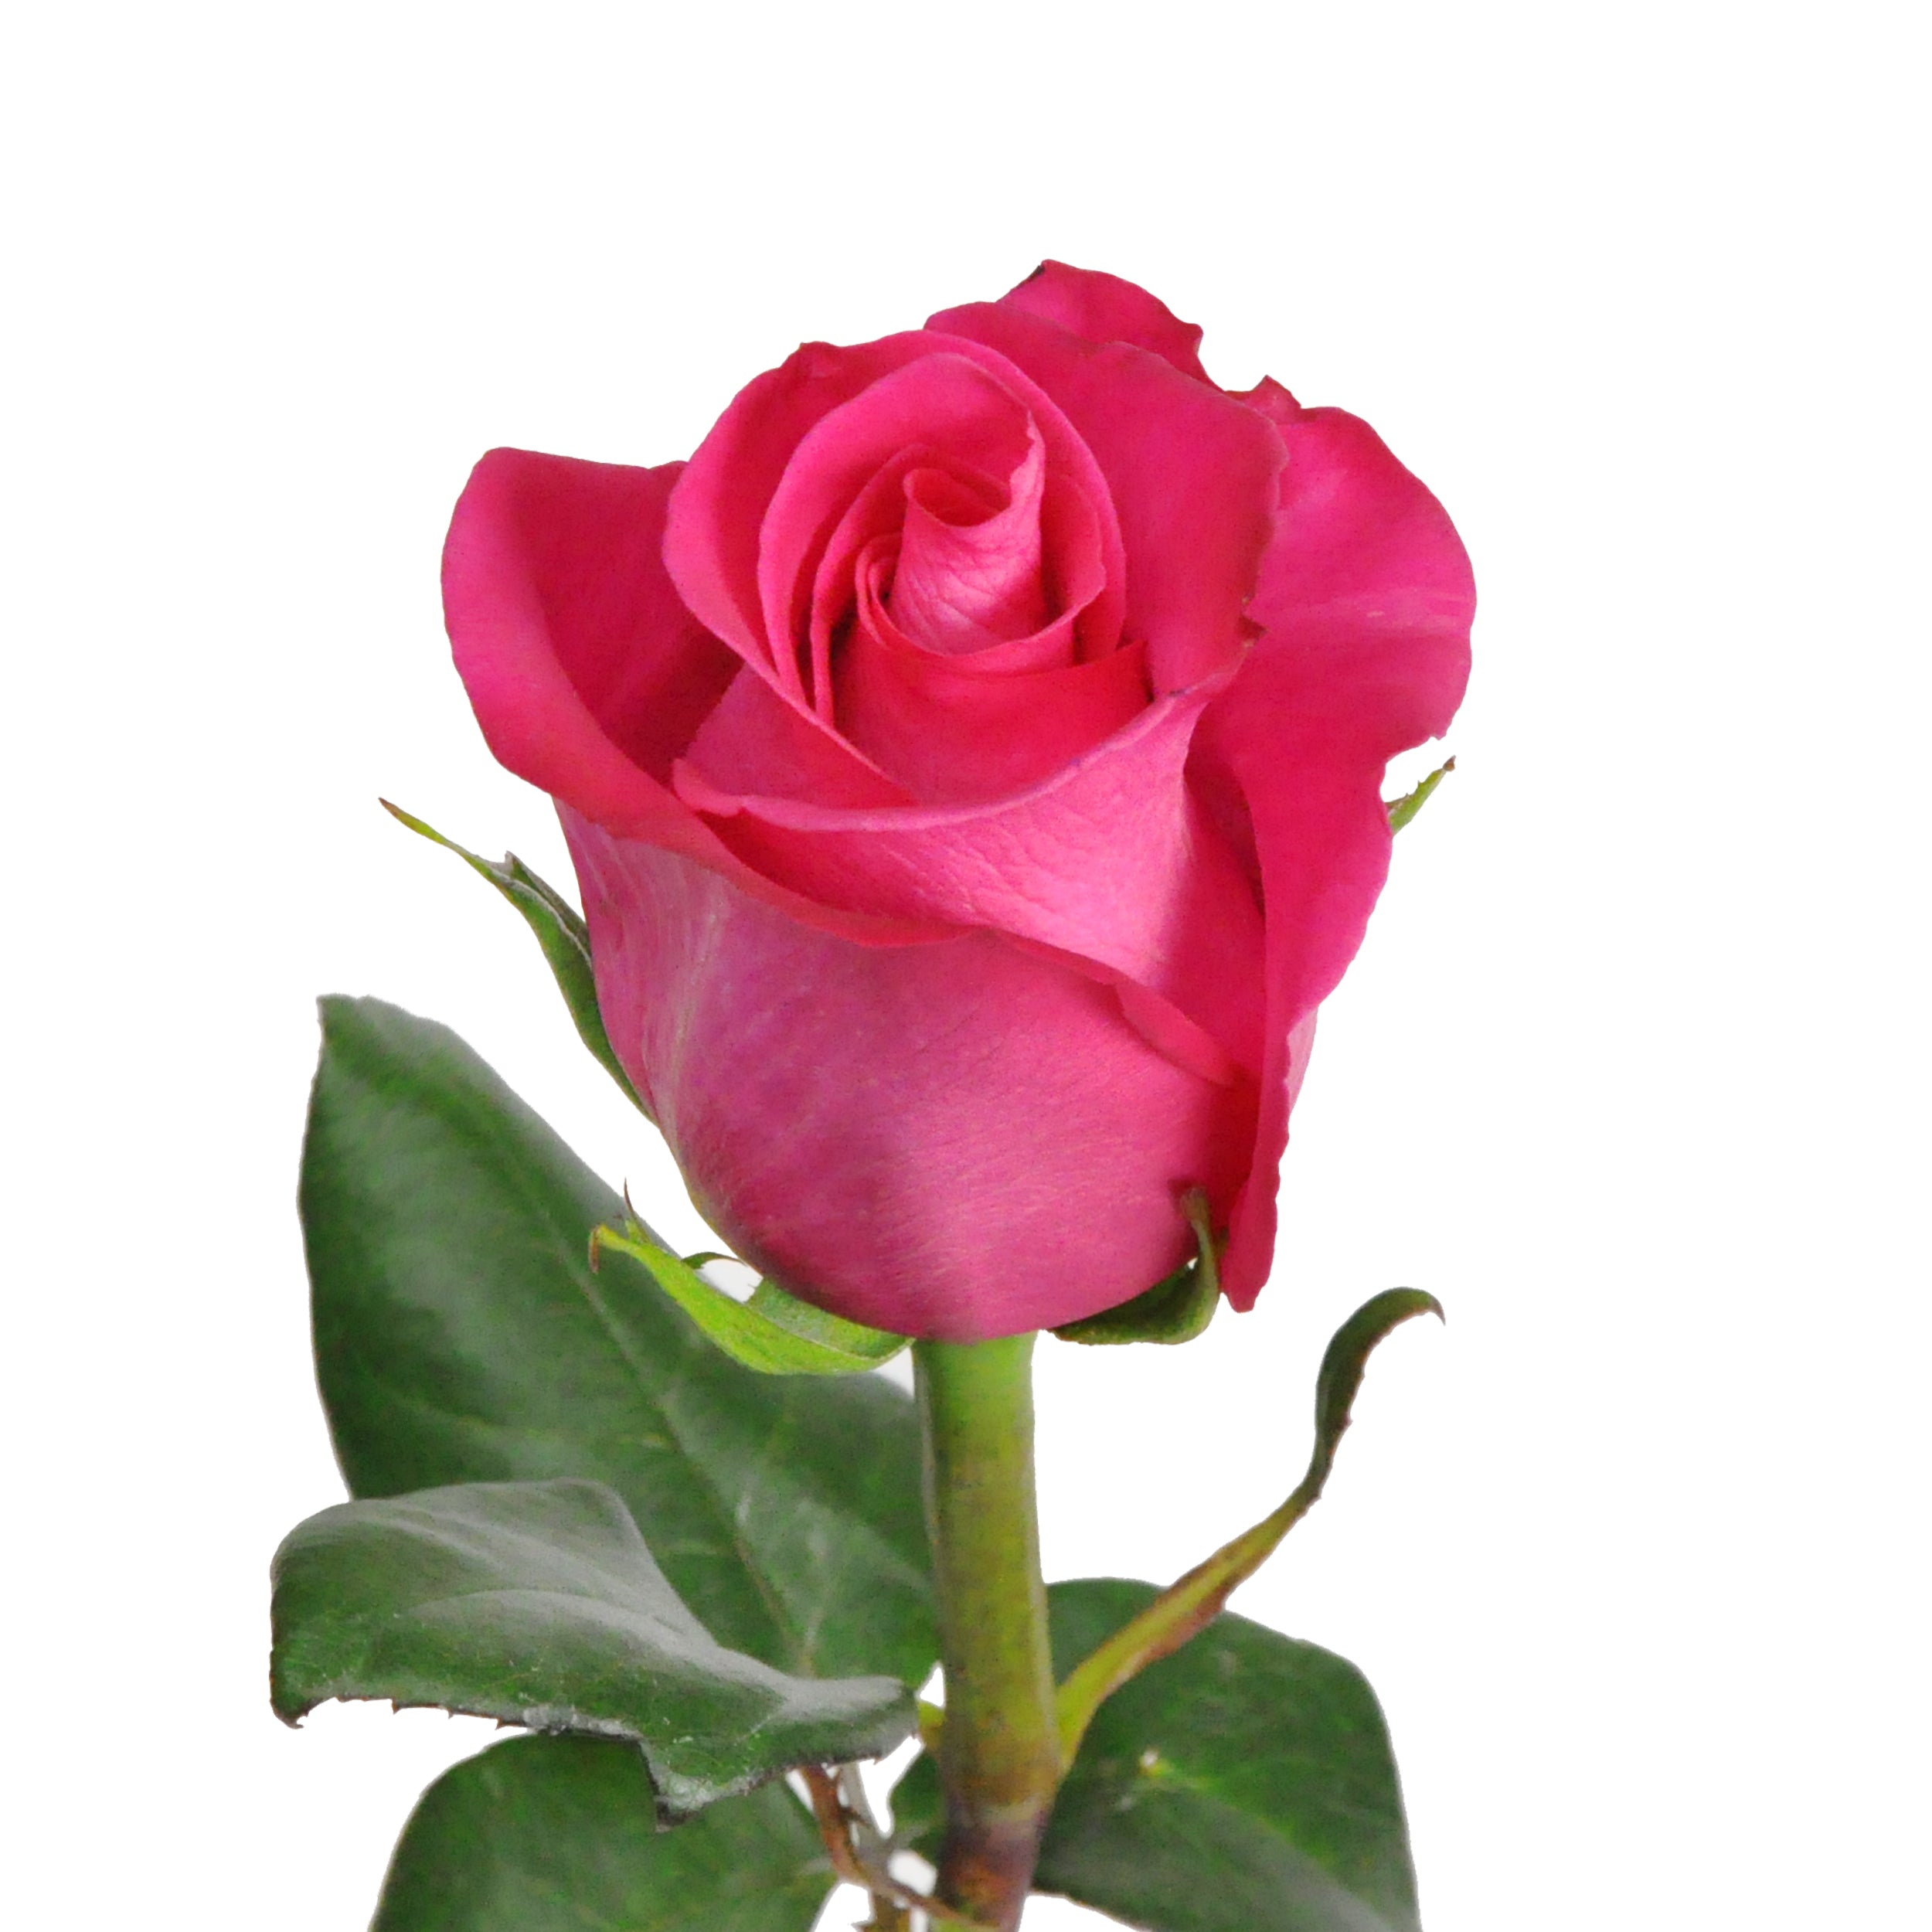 Premium Fresh Rose Petals in Bulk  Free shipping nationwide – Bloomingmore